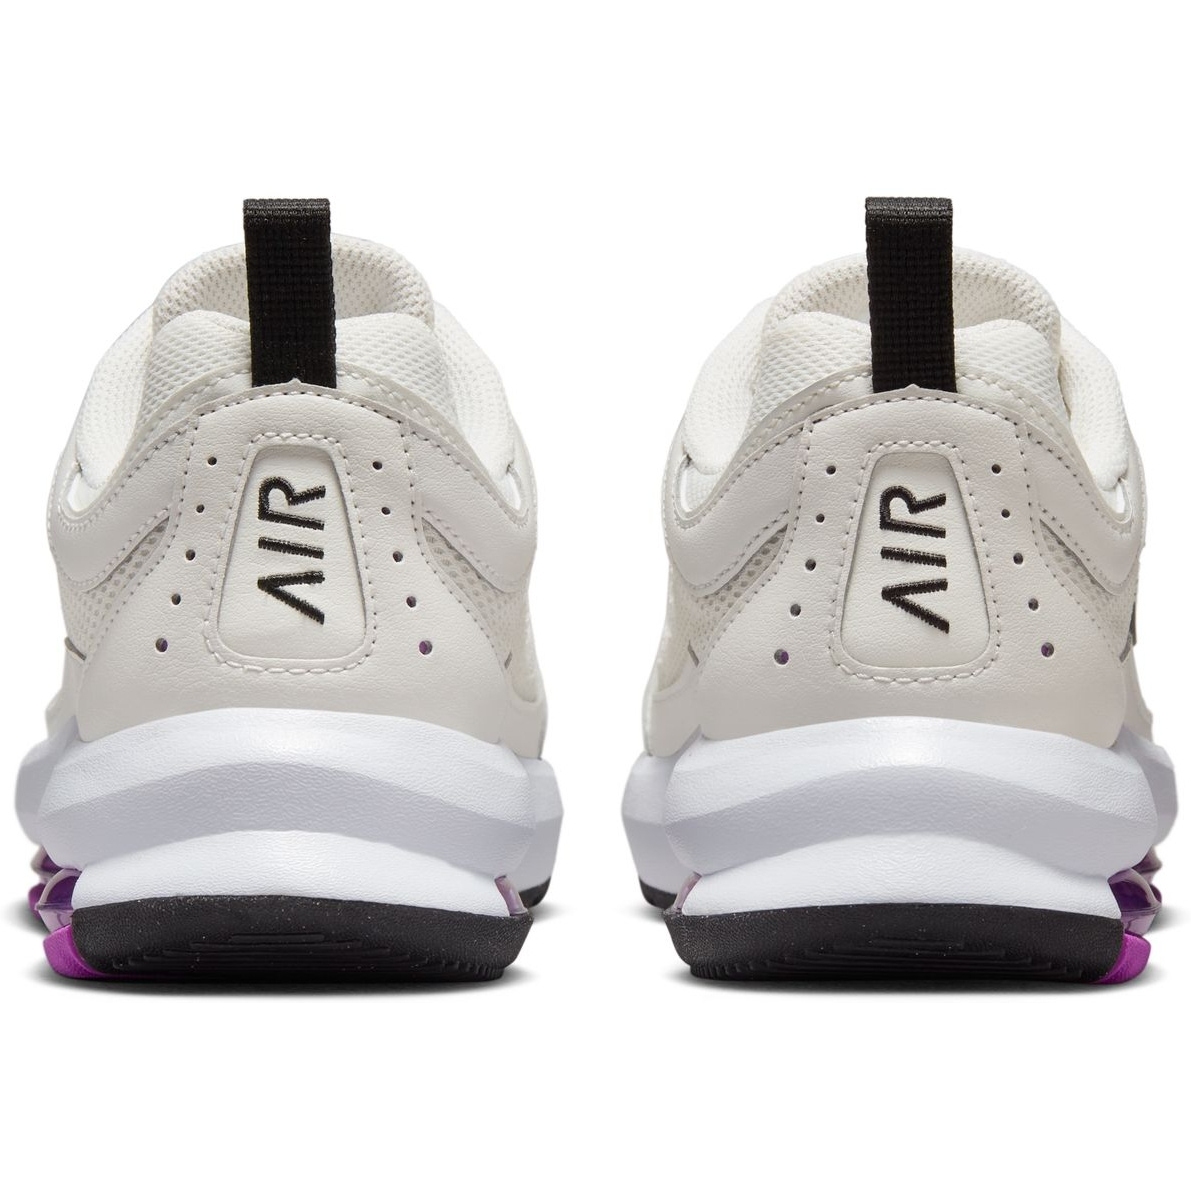 Nike Air Max AP Women's Shoes - phantom/black-sail-white CU4870-004